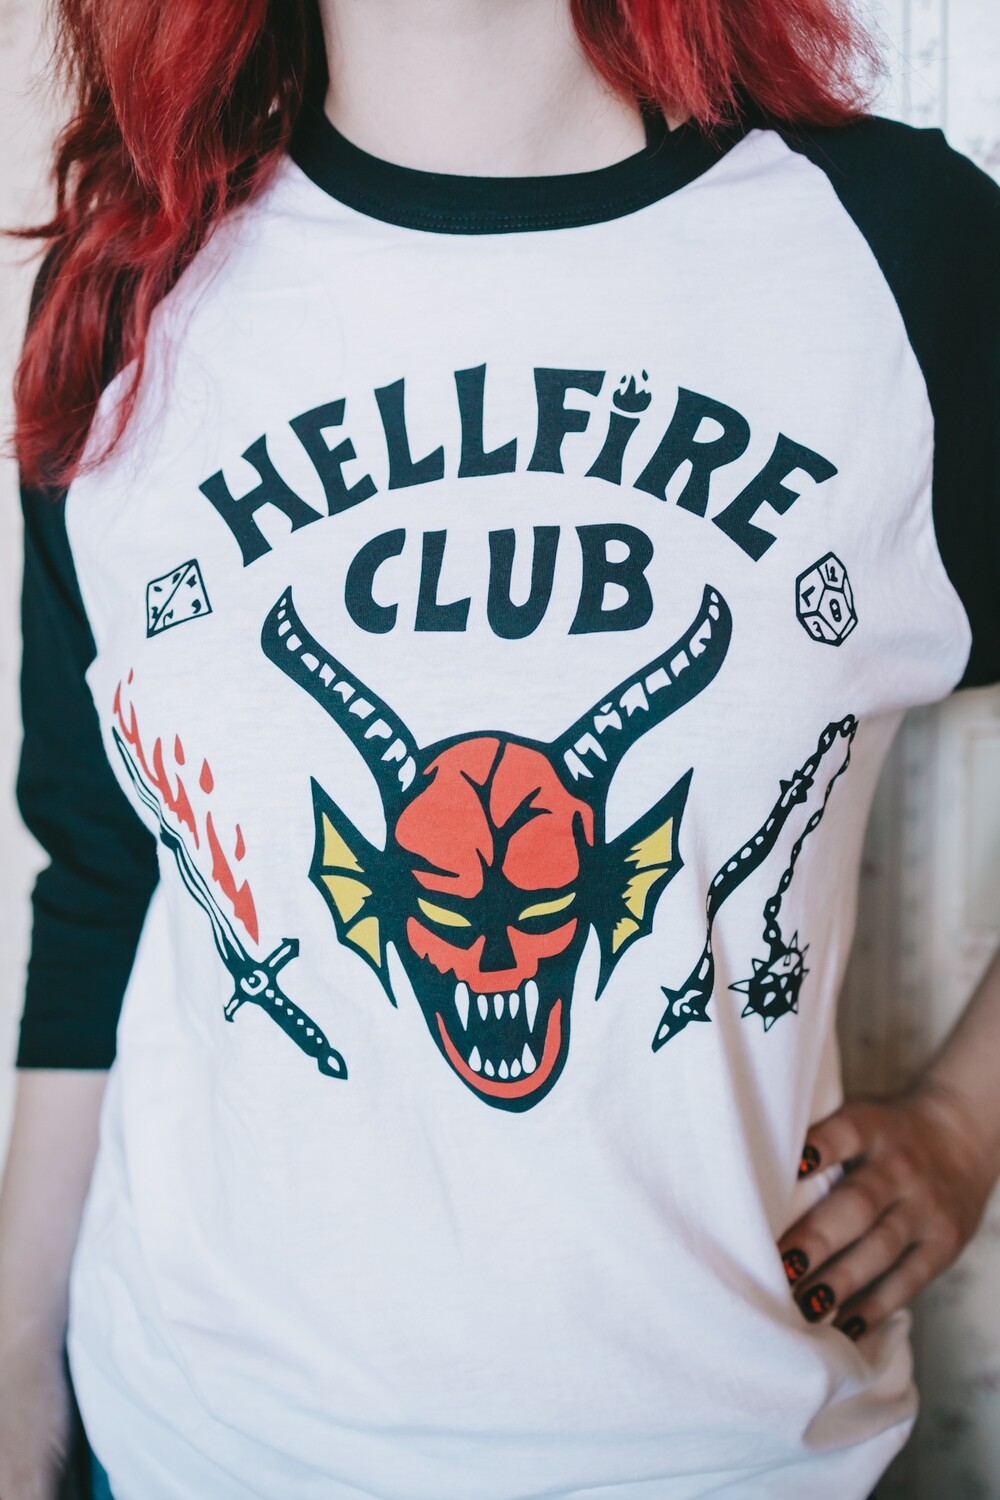 Hellfire Club t shirt